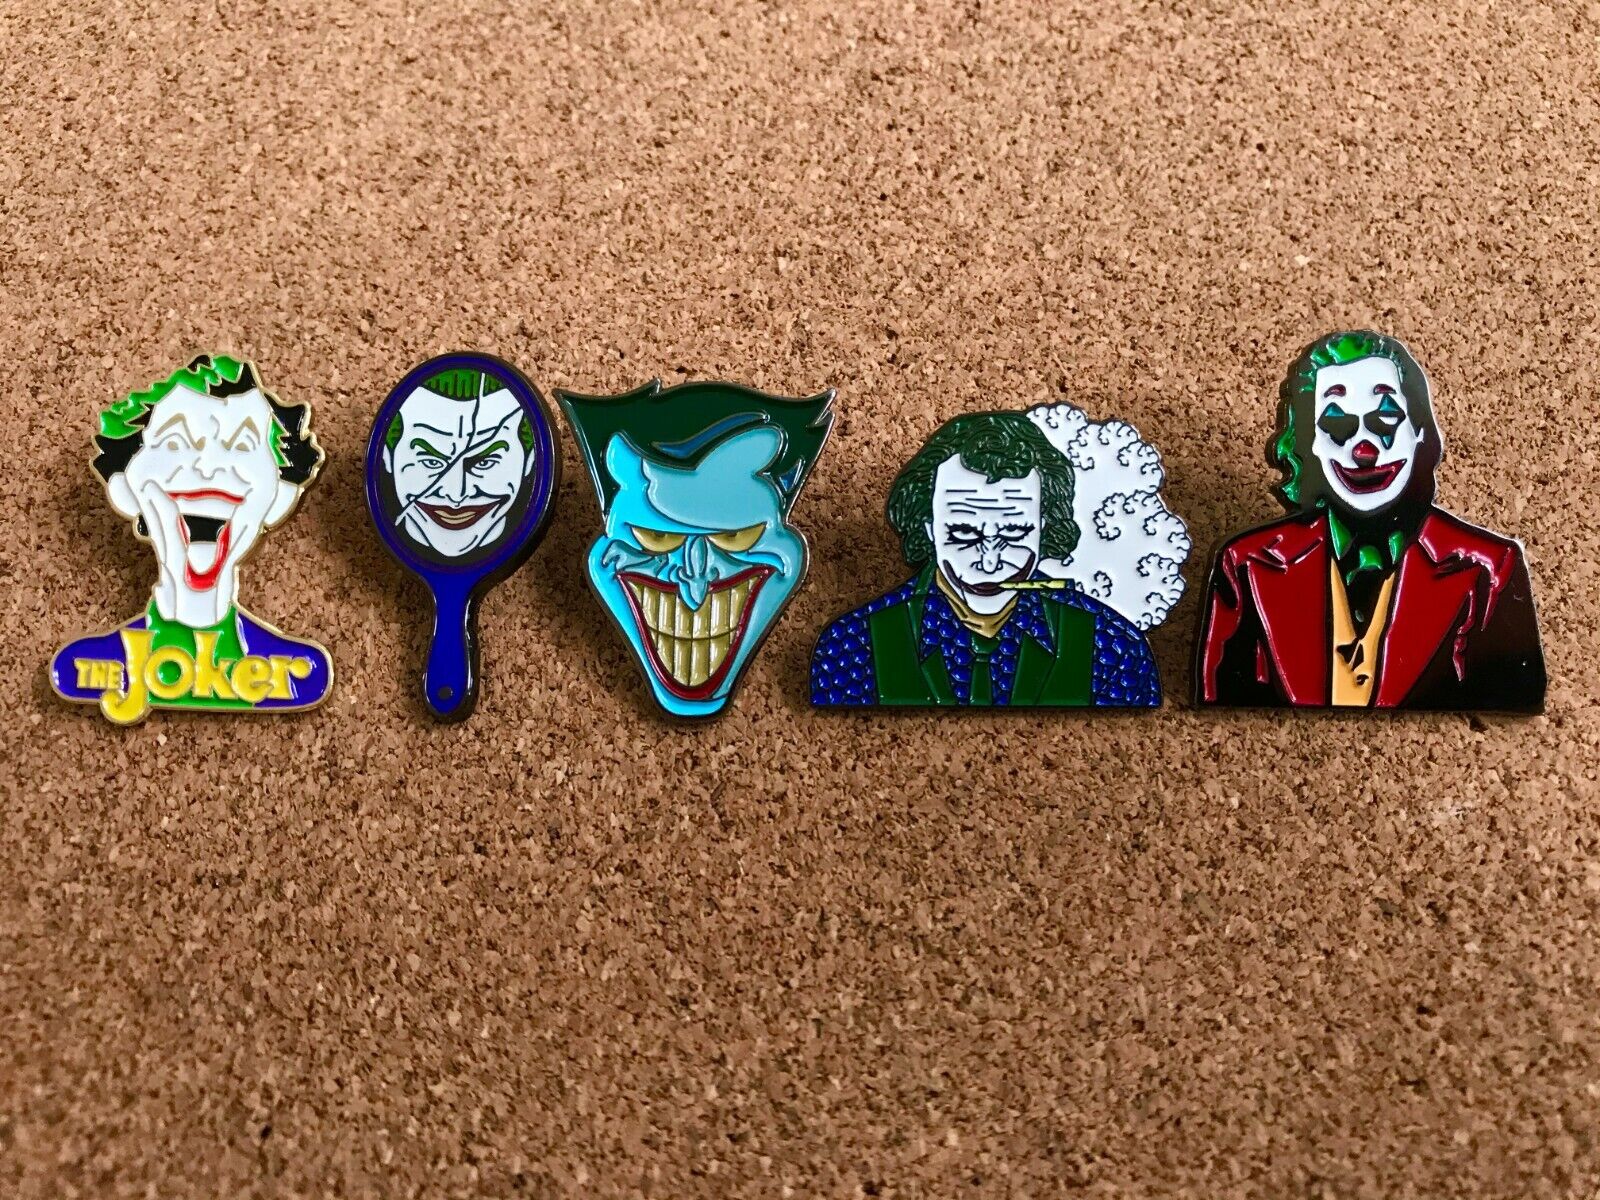 SET OF 5 Evolution Of The Joker Enamel Pin Set